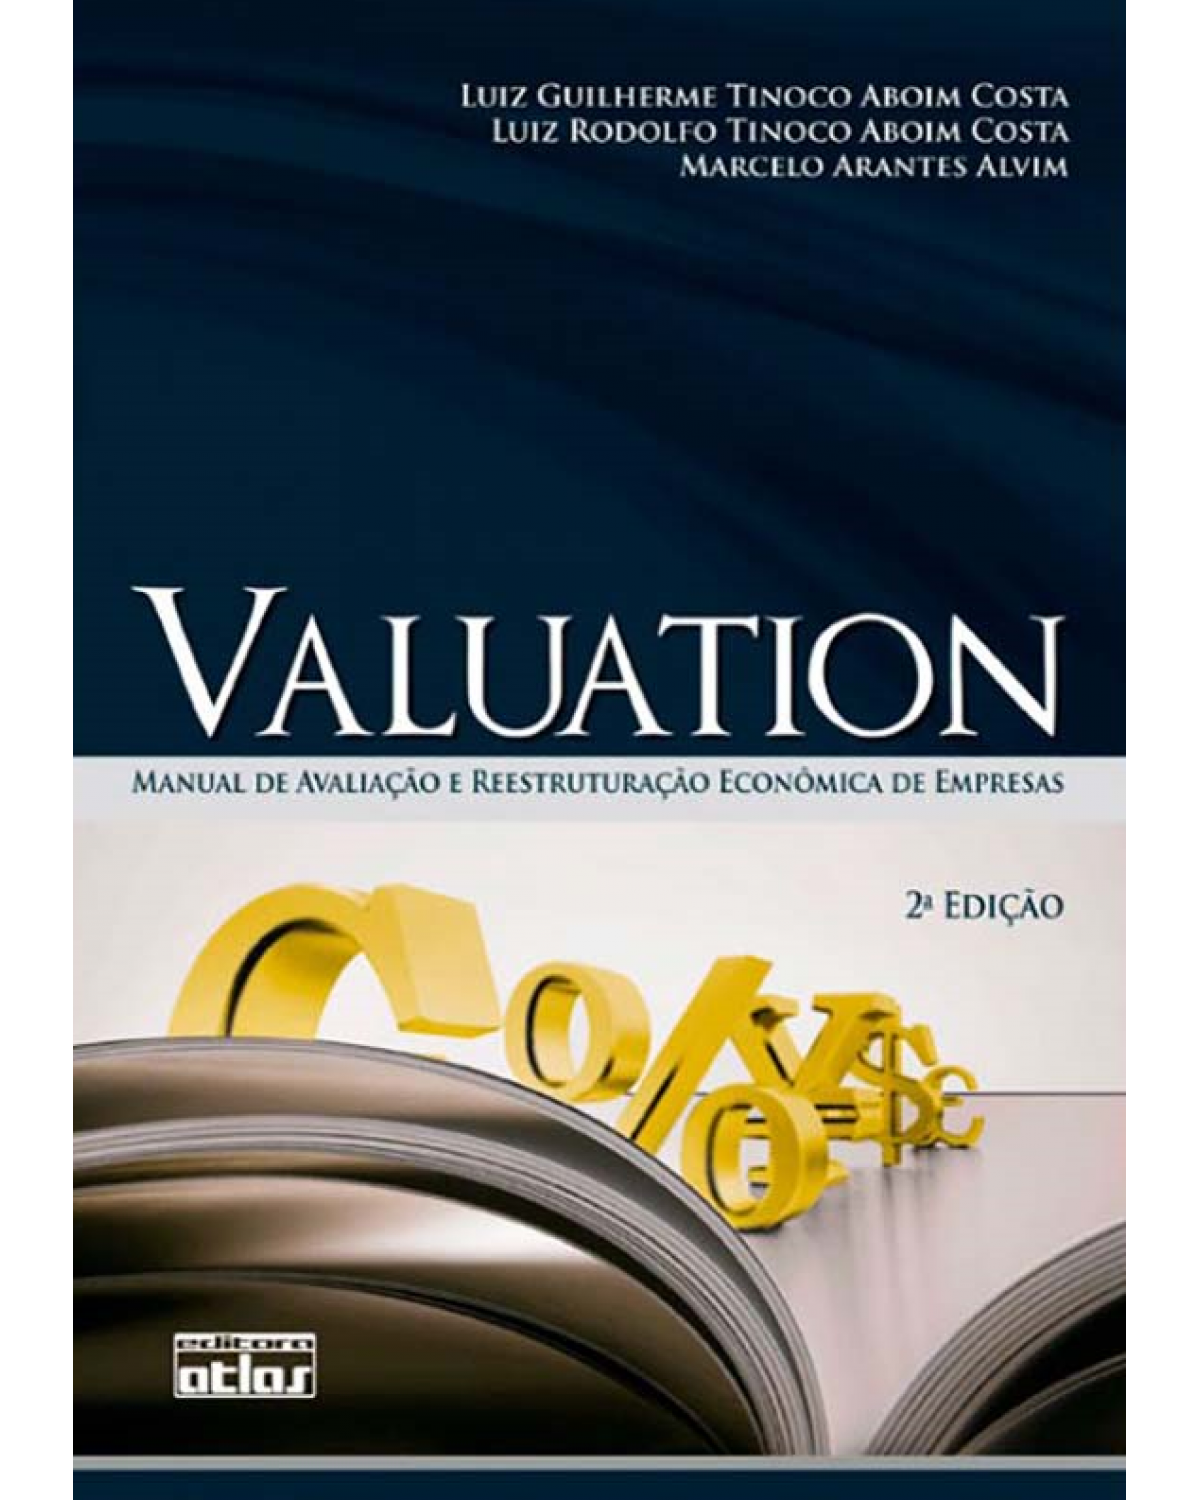 Valuation - Manual de avaliação e reestruturação econômica de empresas - 2ª Edição | 2011